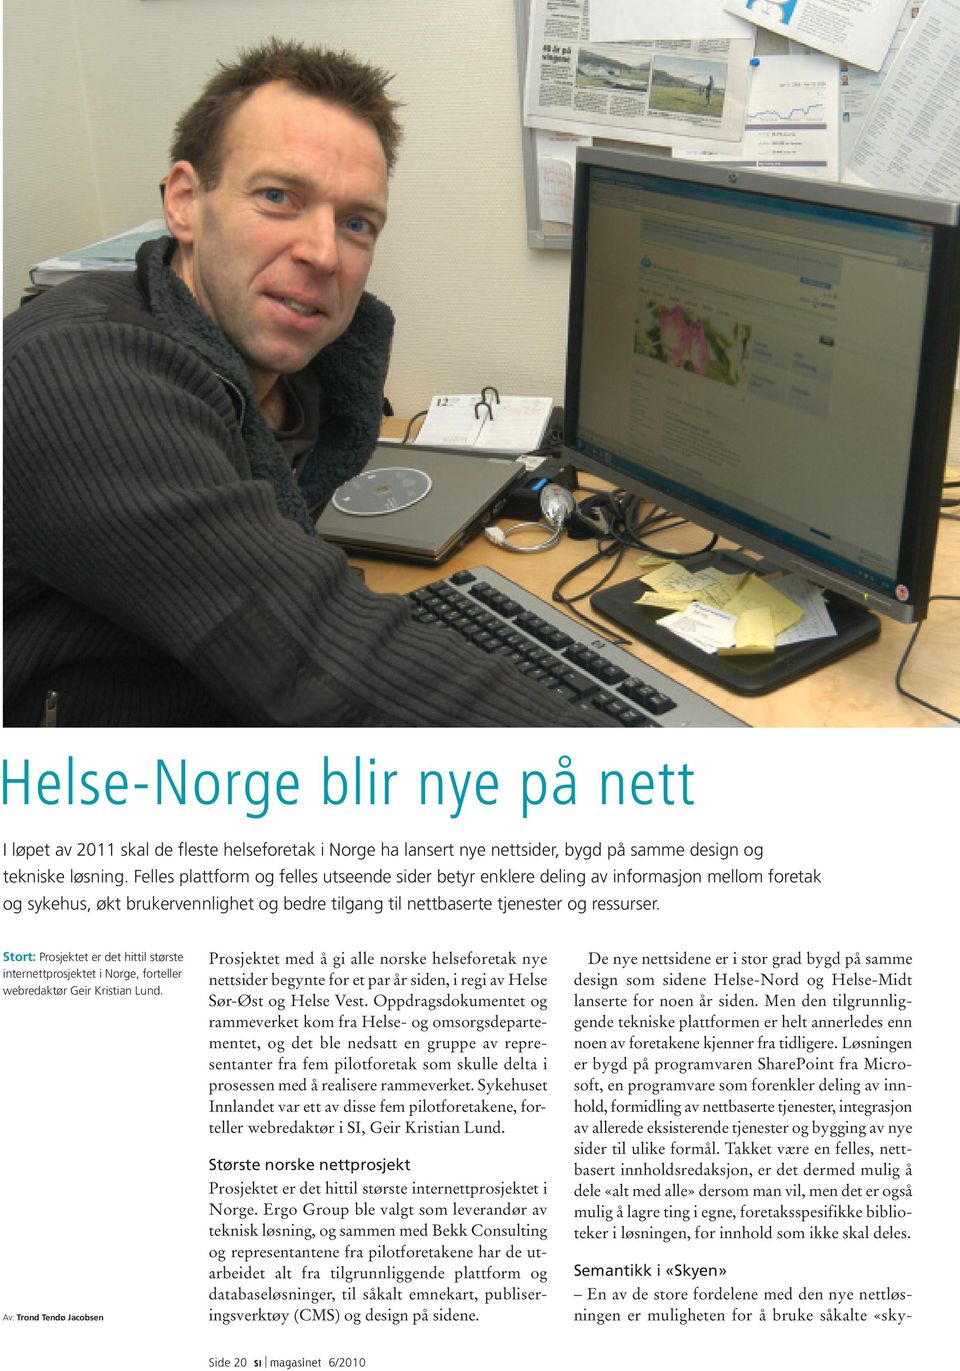 Stort: Prosjektet er det hittil største internettprosjektet i Norge, forteller webredaktør Geir Kristian Lund.